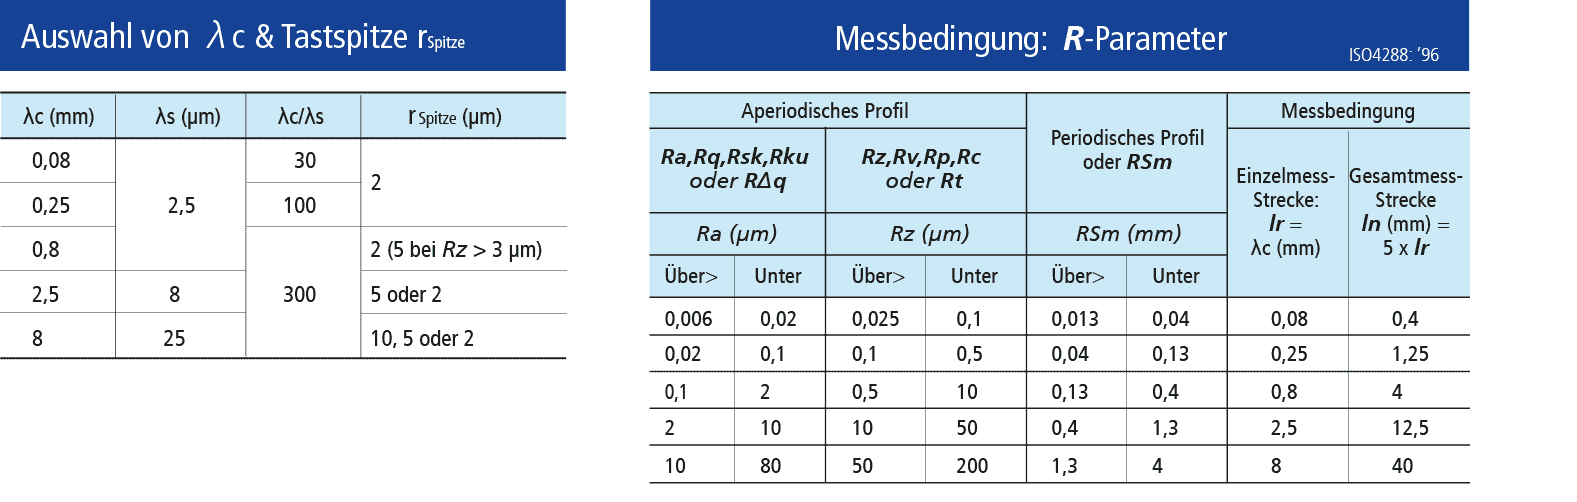 Oberflächen messen: Tabelle zur Auswahl der Tastspitze und R-Parameter